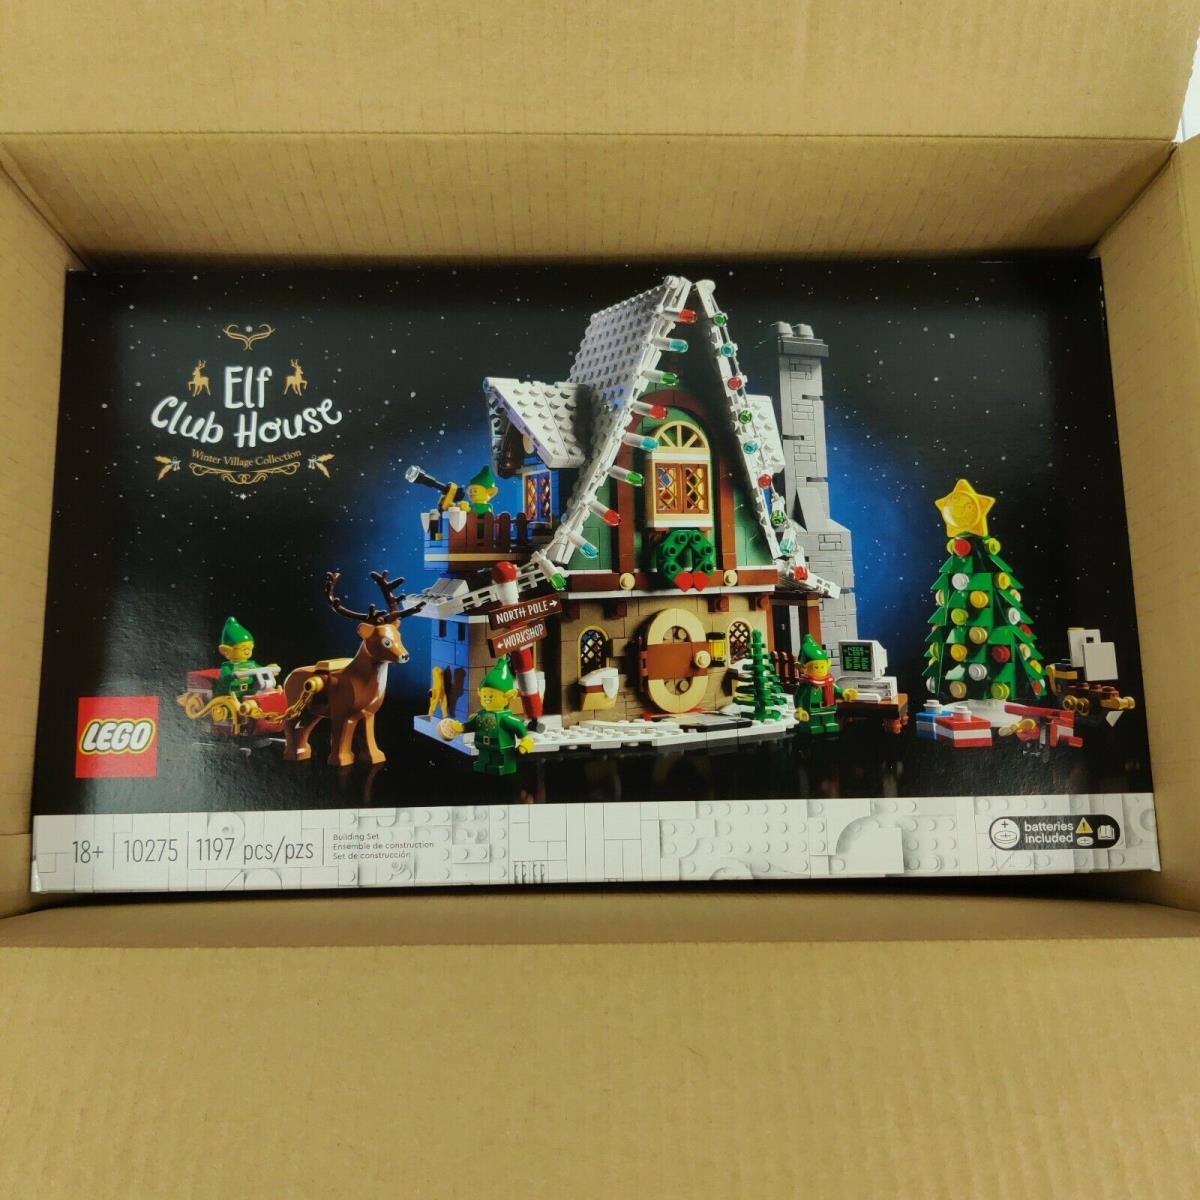 Lego Christmas Elf Club Houses 1197 Pieces 10275